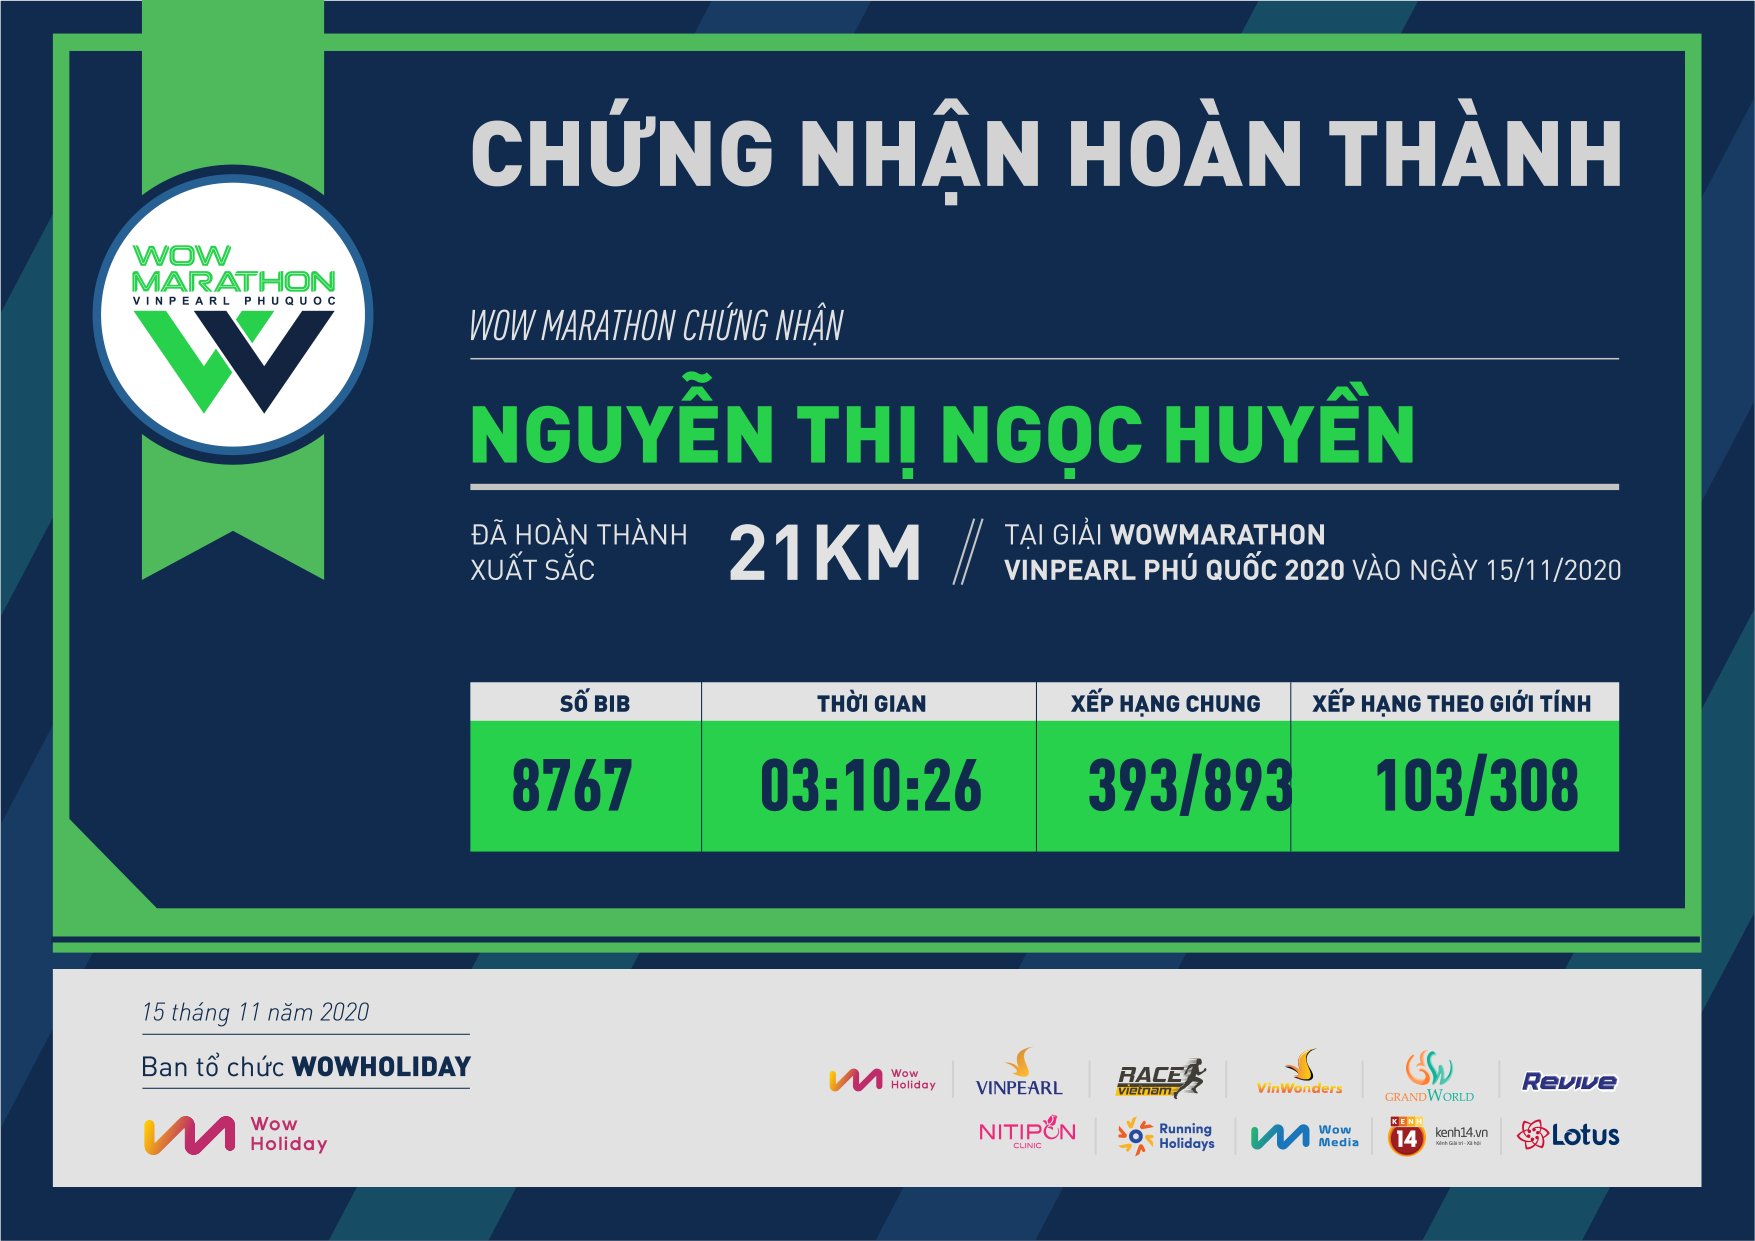 8767 - Nguyễn Thị Ngọc Huyền